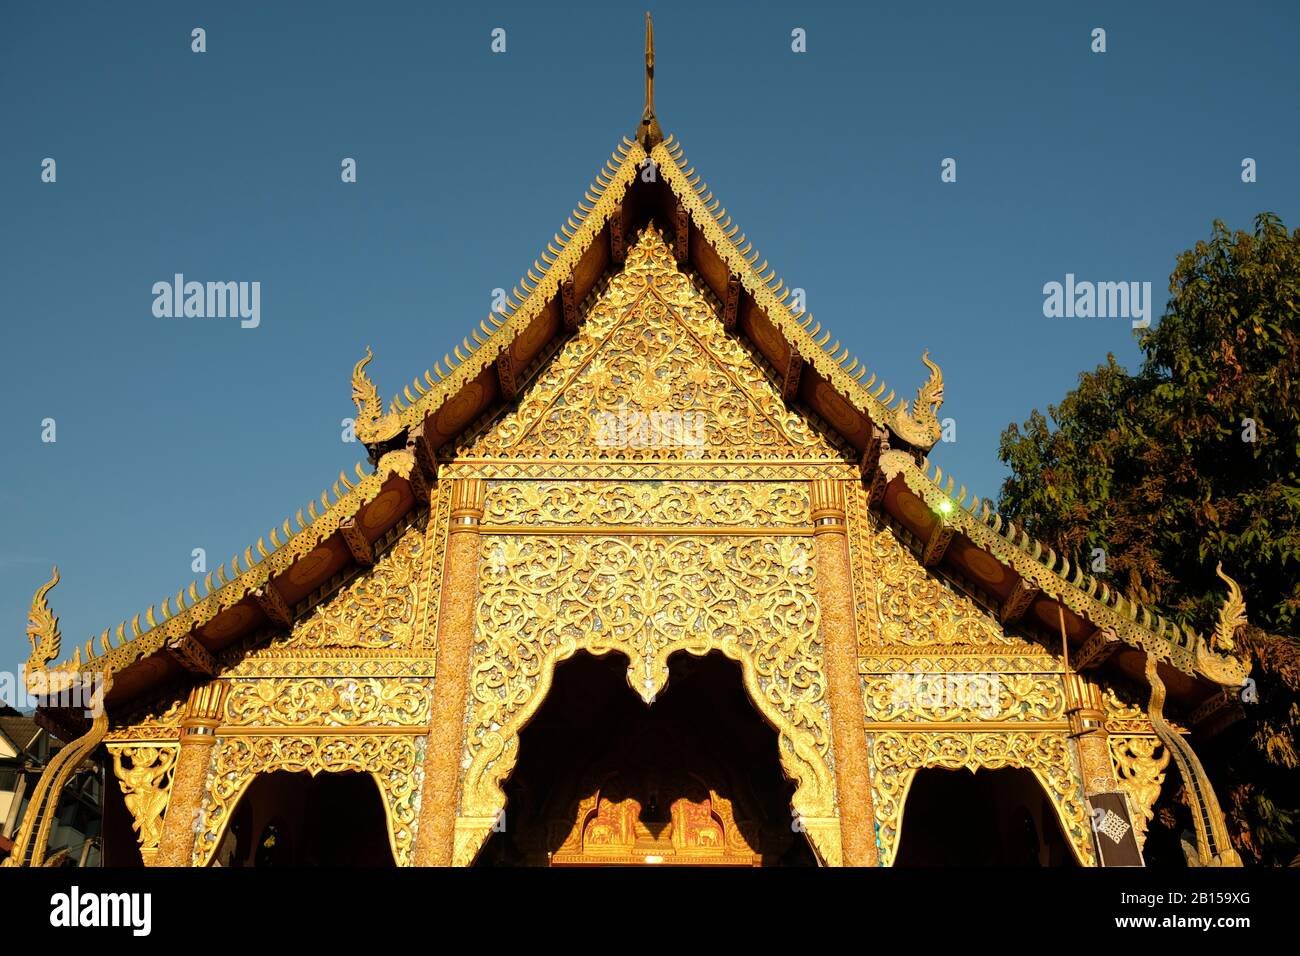 Chiang mai Thailandia - Tempio Chiang Man tetto d'oro al mattino presto Foto Stock